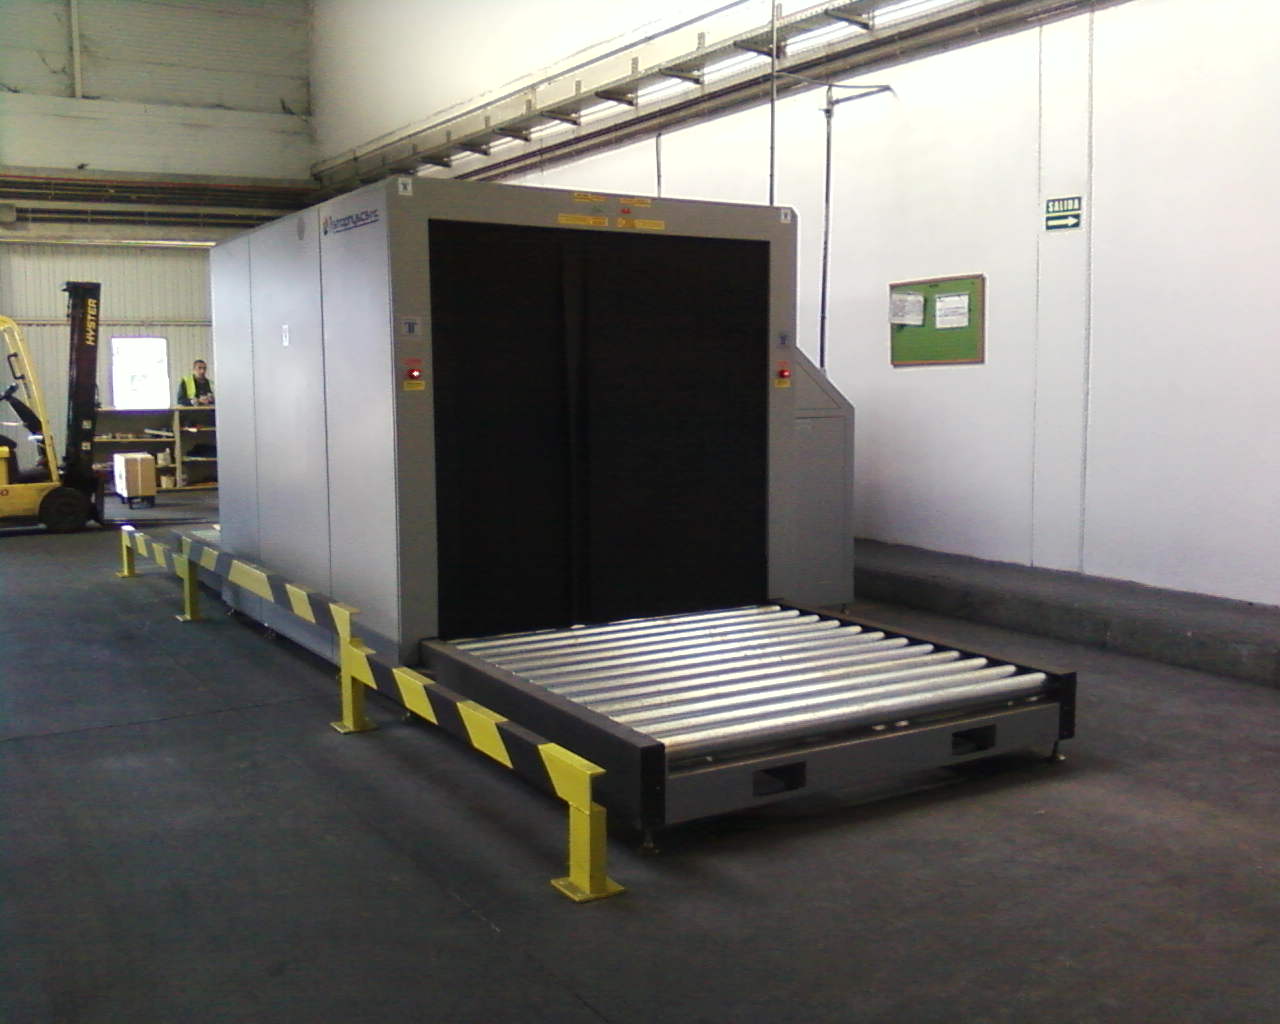 Escaner de Rayos X, instalado en el aeropuerto de Barajas por Ireneo Logística